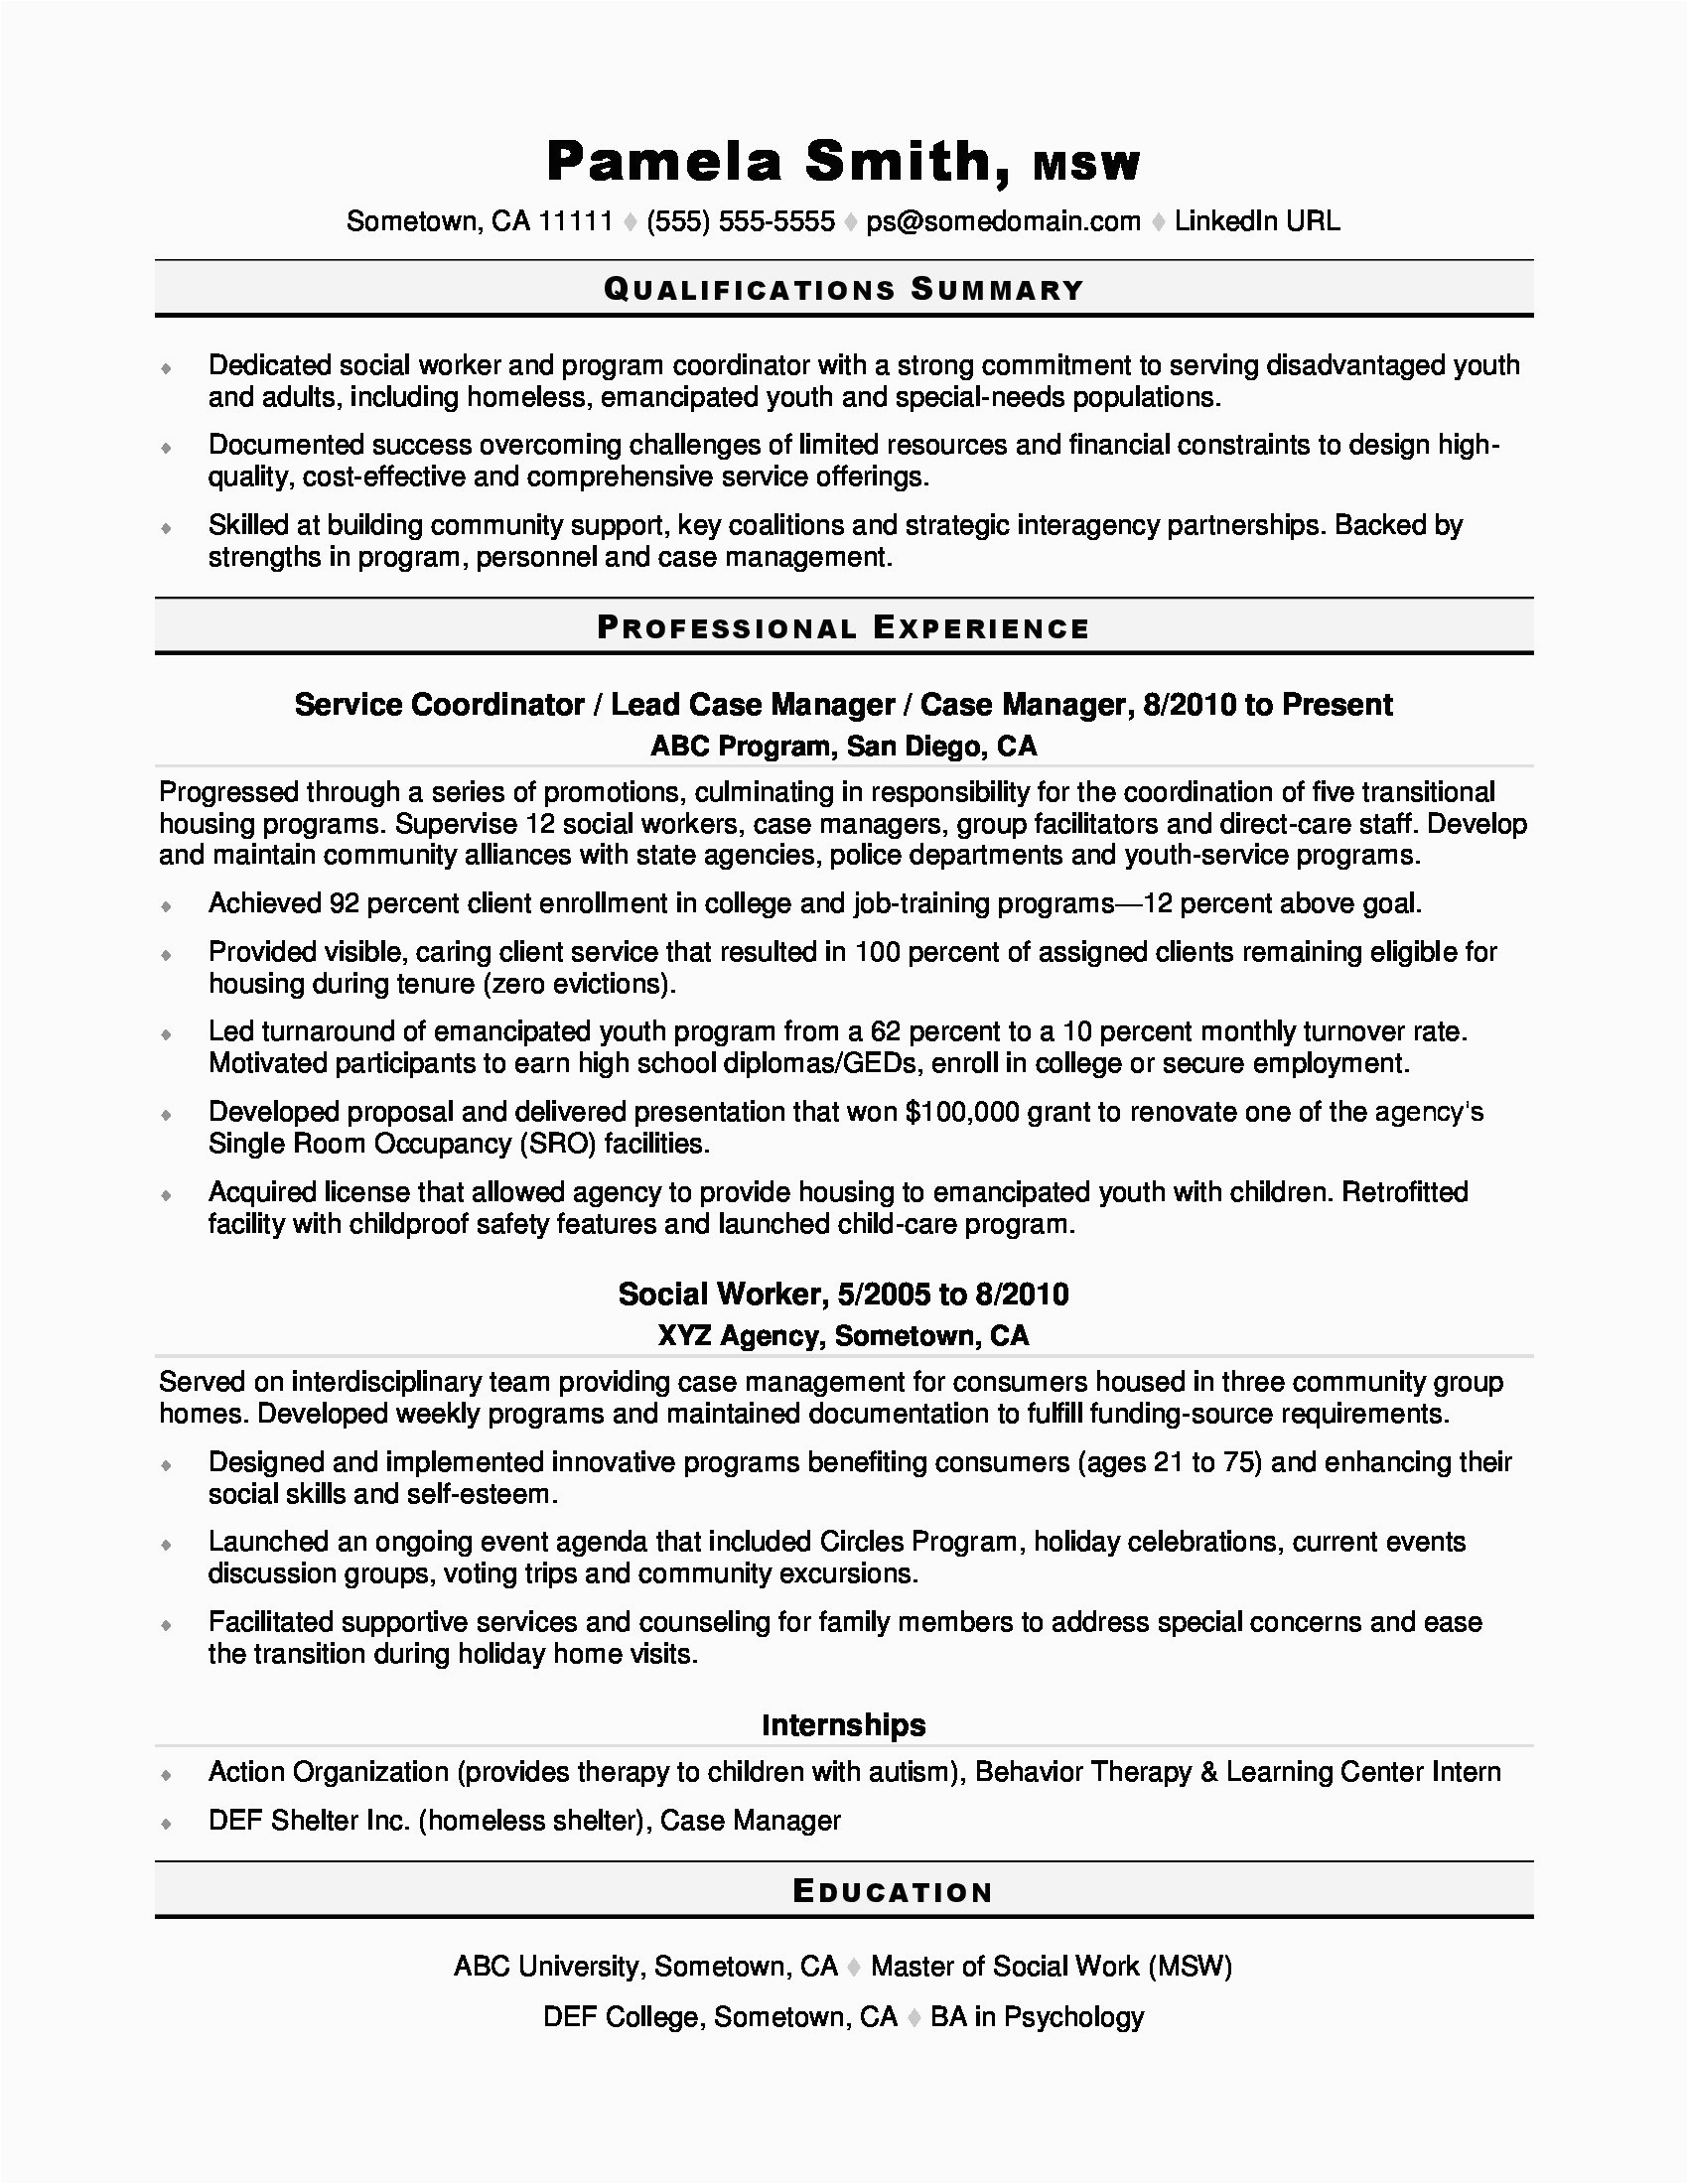 Sample Resume for social Worker Position social Worker Resume Sample